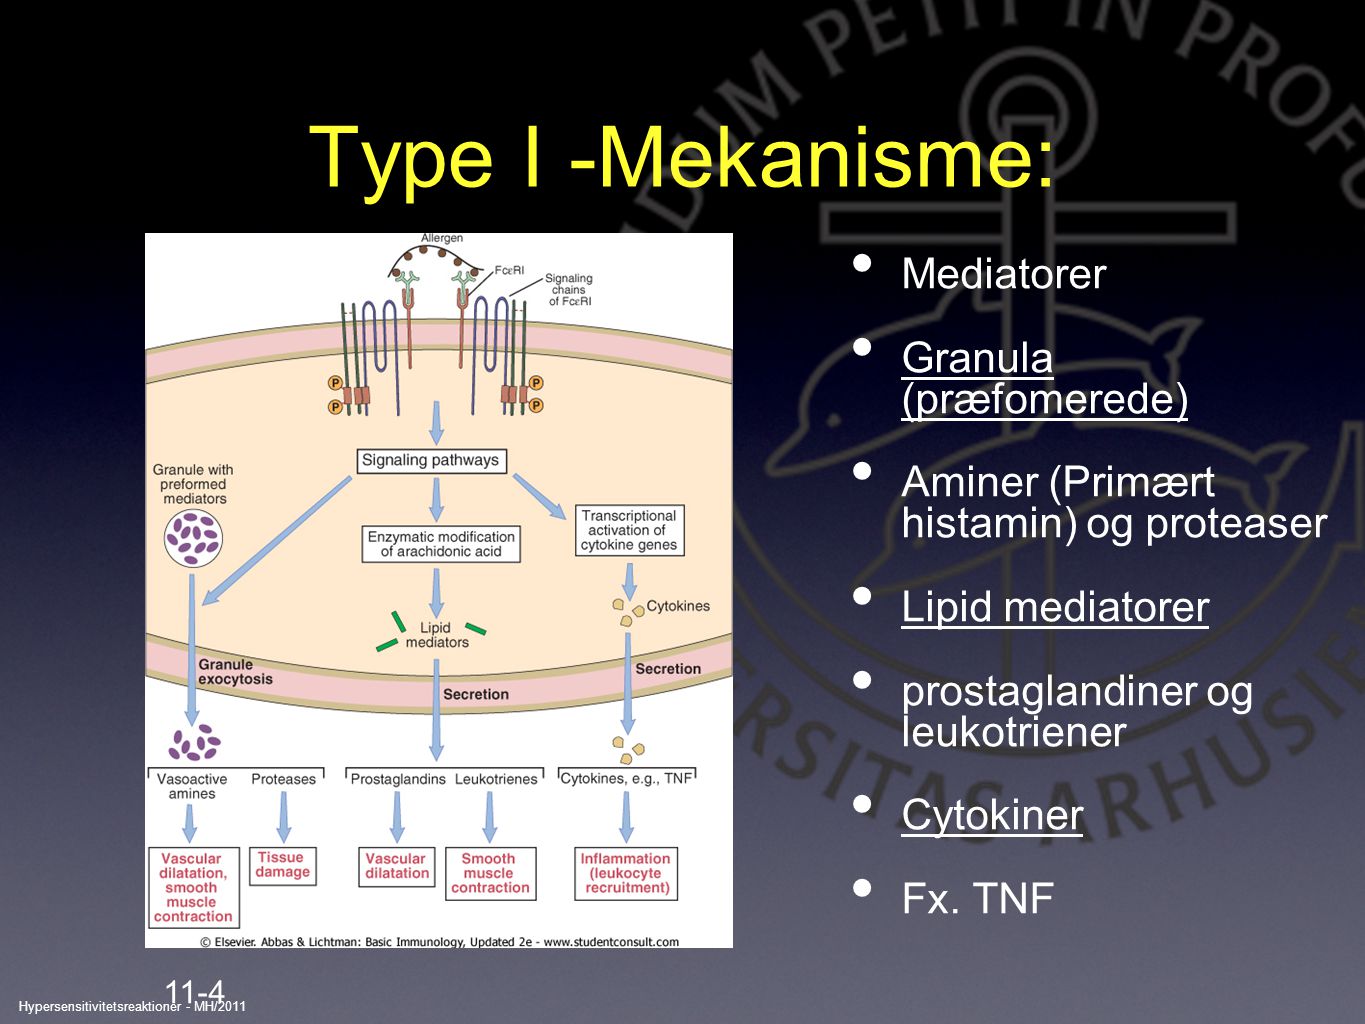 Type I -Mekanisme: Mediatorer Granula (præfomerede)